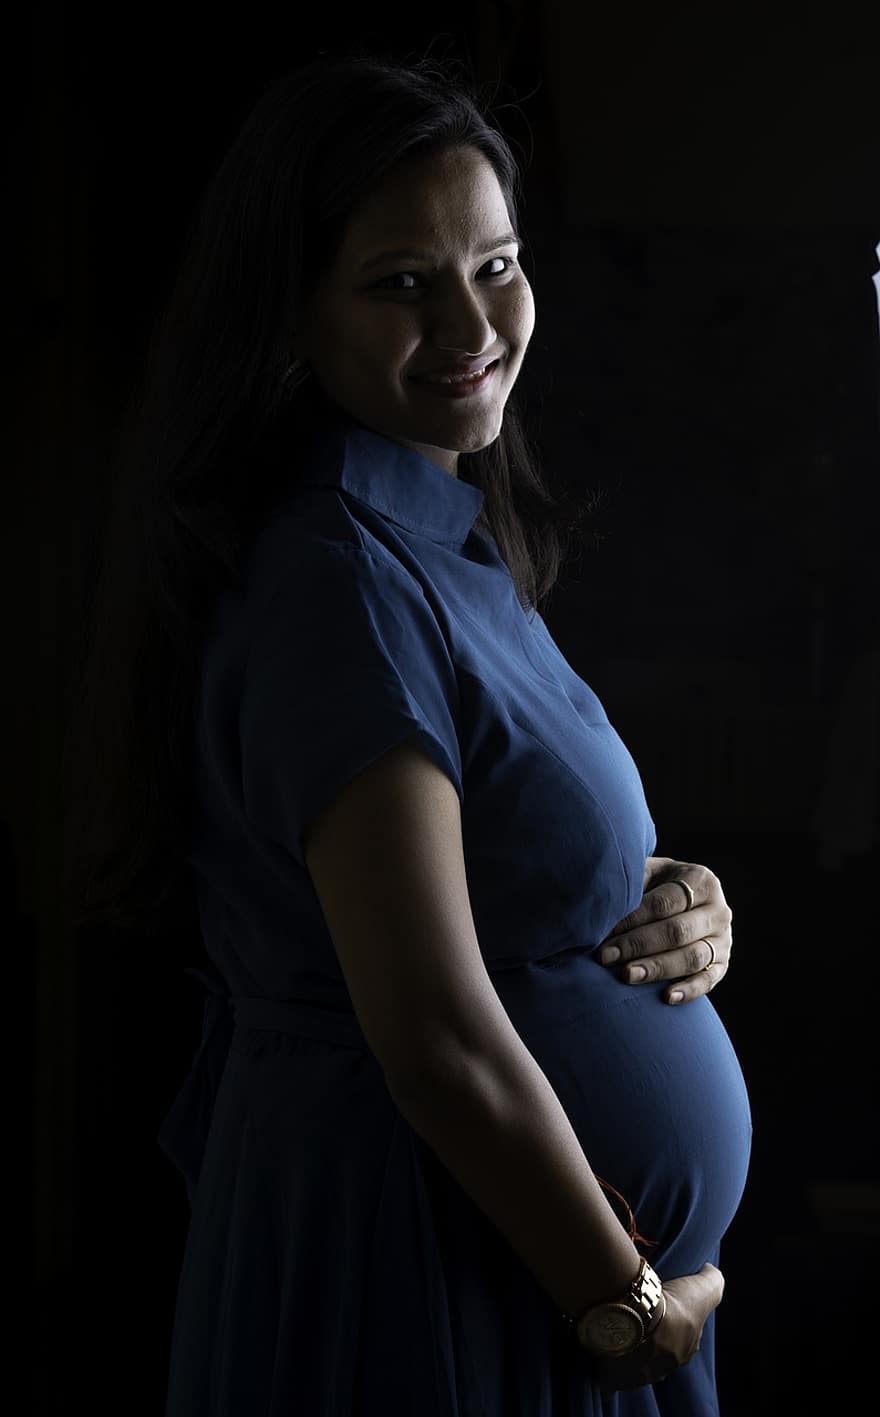 भारतीय महिला, गर्भवती, चित्र, कर्नाटक, बैंगलोर, मातृत्व, मातृत्व शूट, महिलाओं, एक व्यक्ति, वयस्क, मुस्कराते हुए